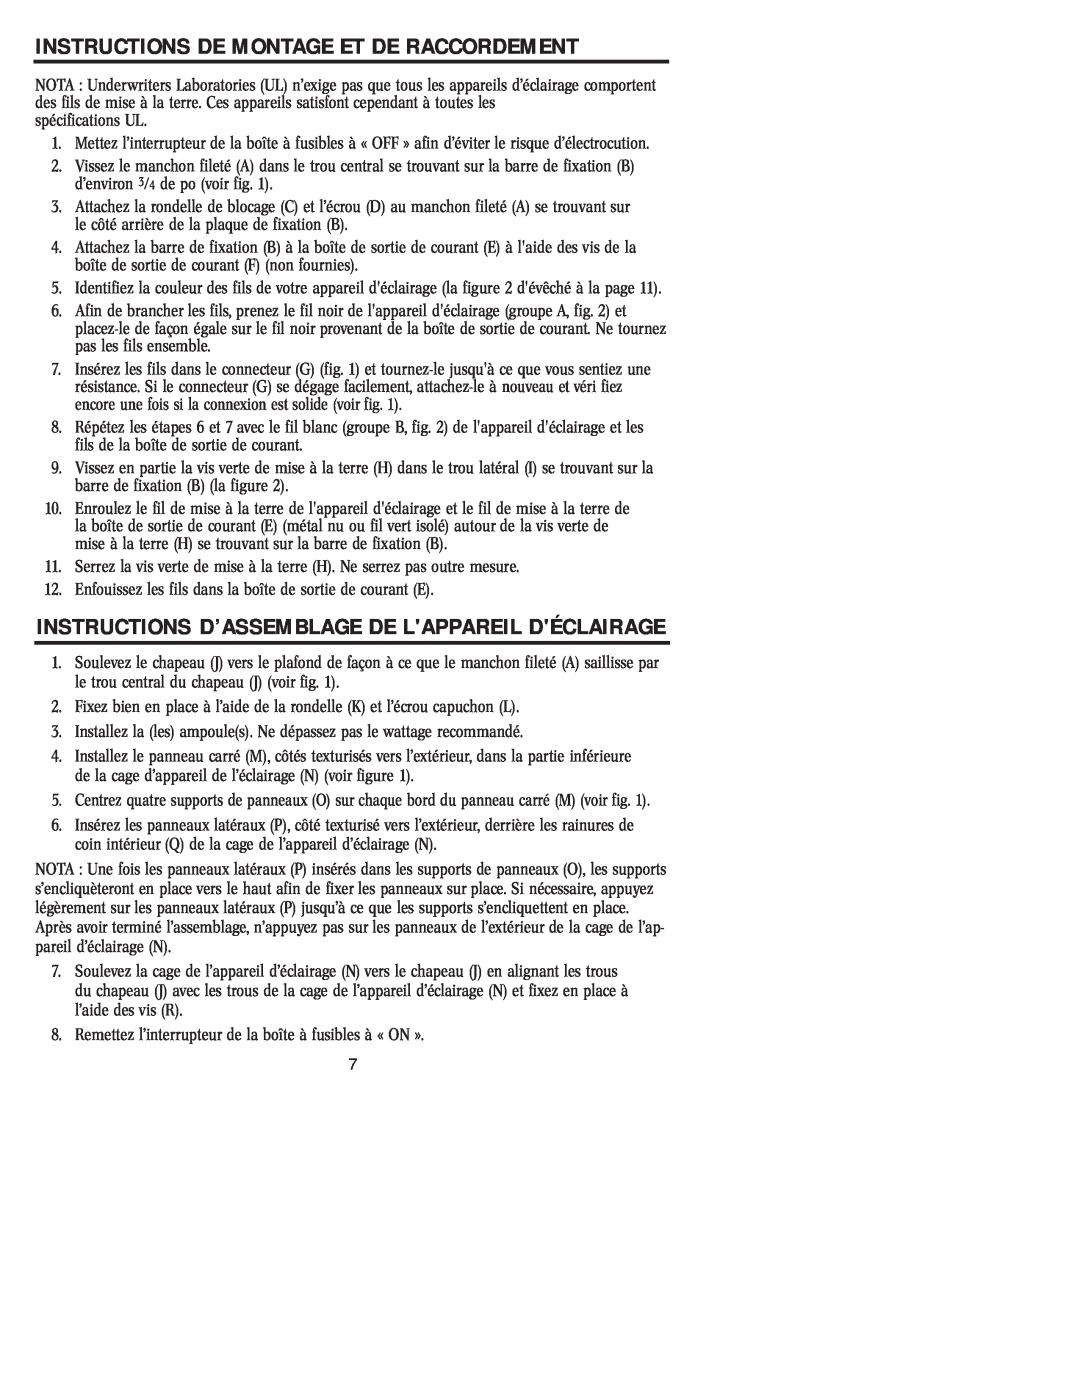 Westinghouse 20204 Instructions D’Assemblage De Lappareil Déclairage, Instructions De Montage Et De Raccordement 